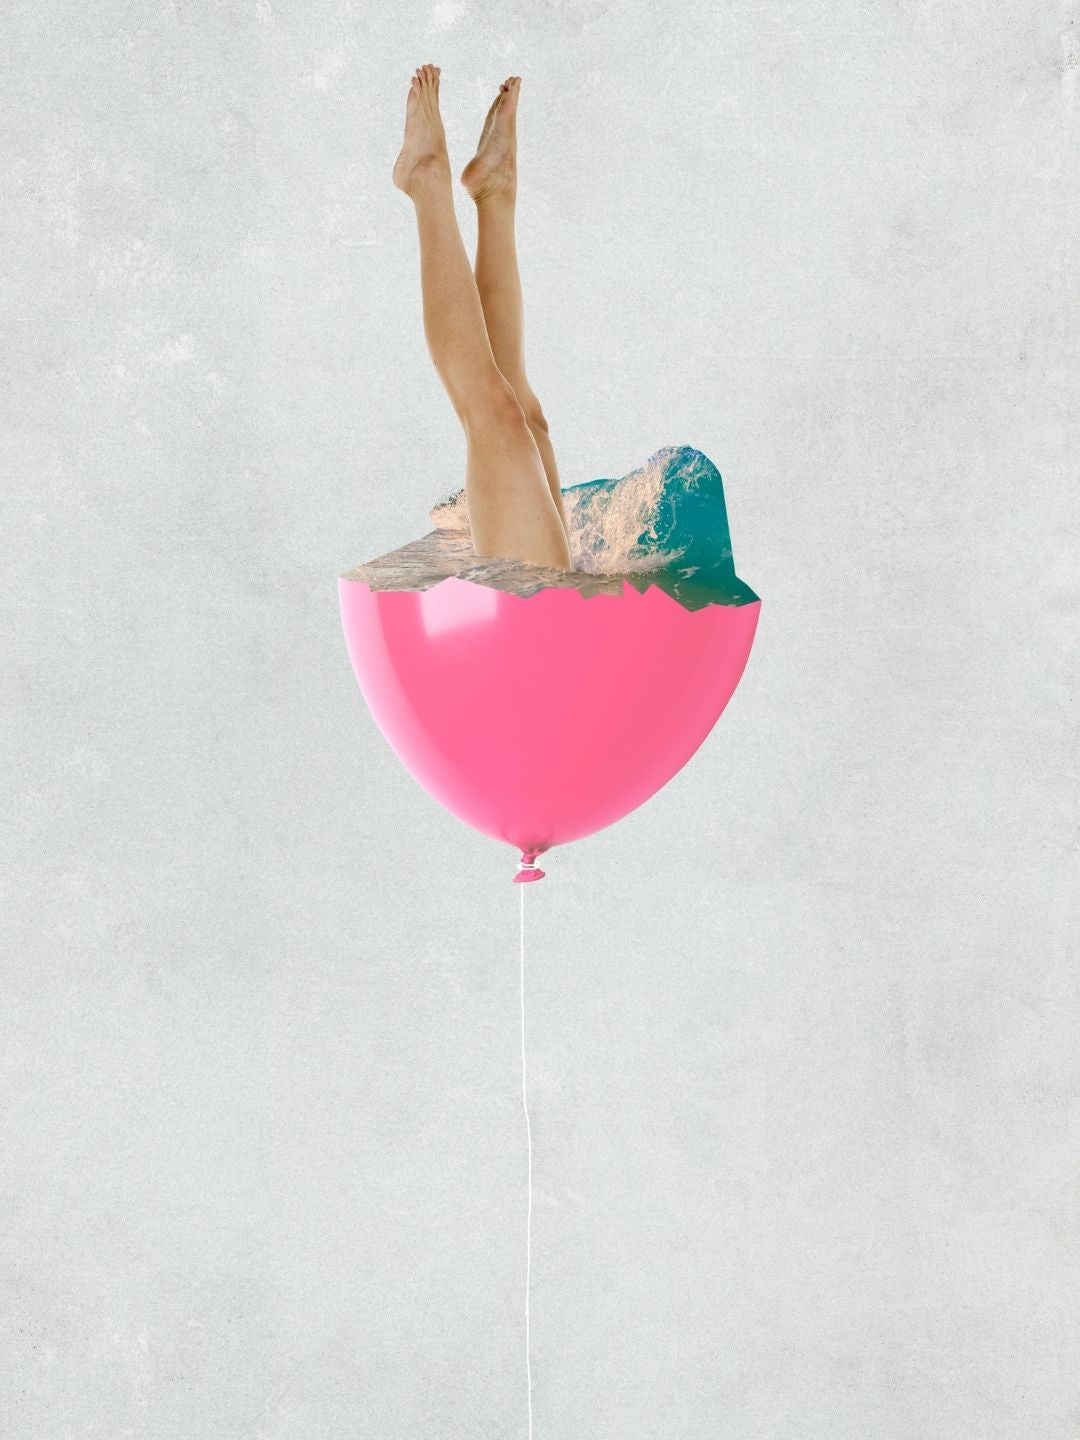 Leonie Berkenbosch - Balloon Pool